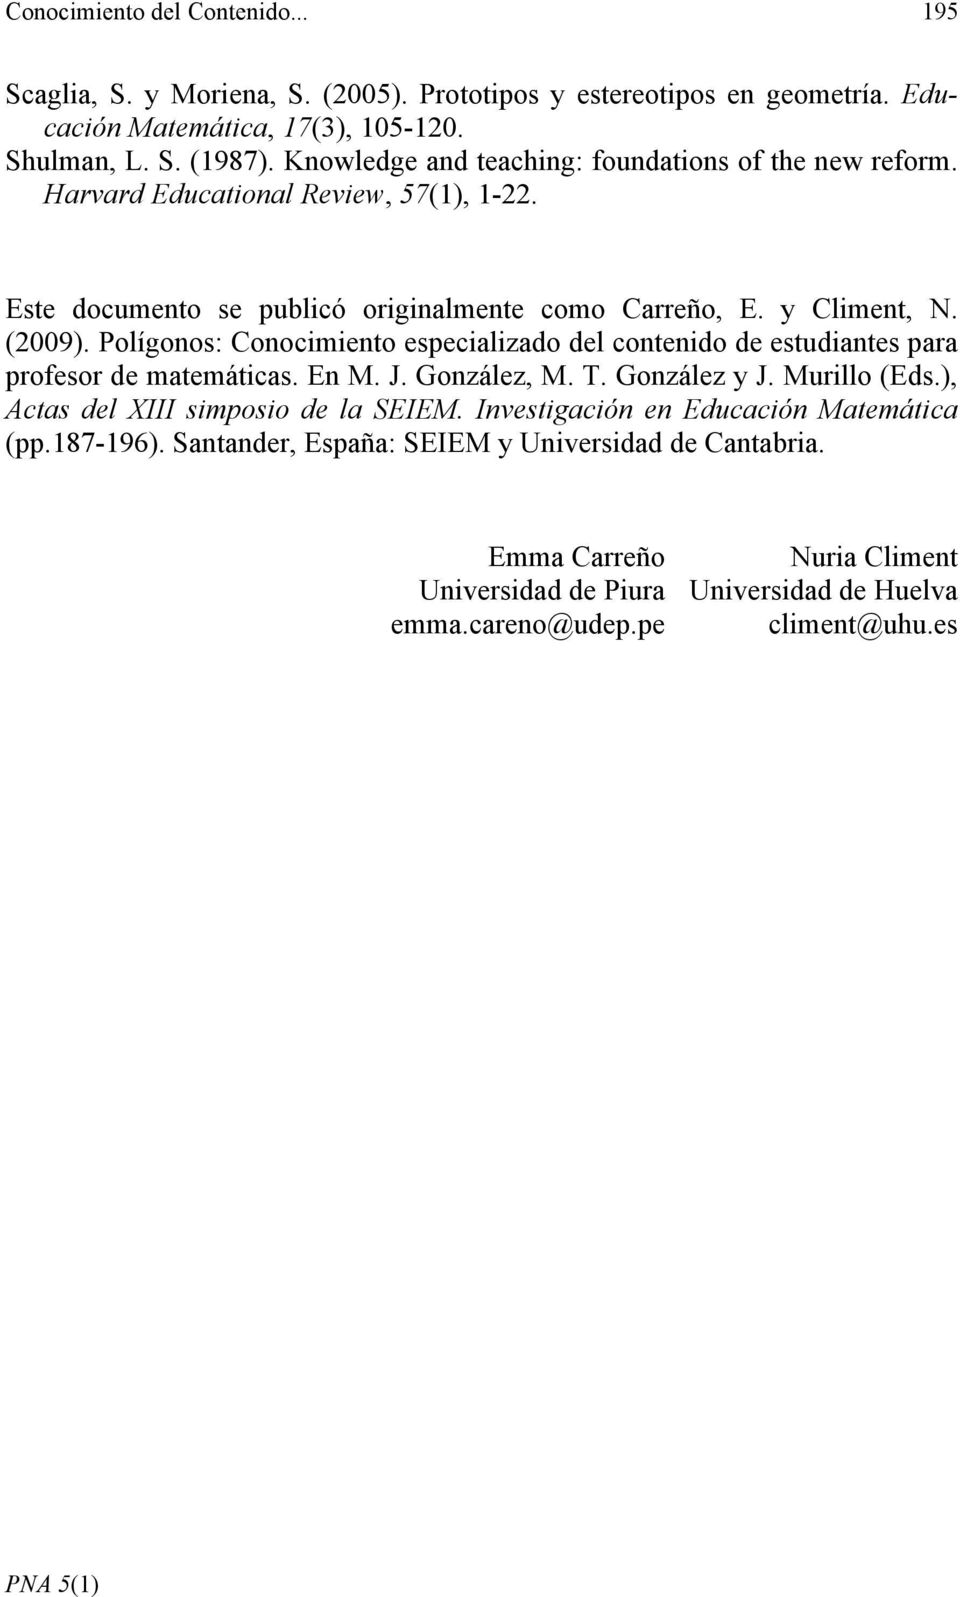 Polígonos: Conocimiento especializado del contenido de estudiantes para profesor de matemáticas. En M. J. González, M. T. González y J. Murillo (Eds.